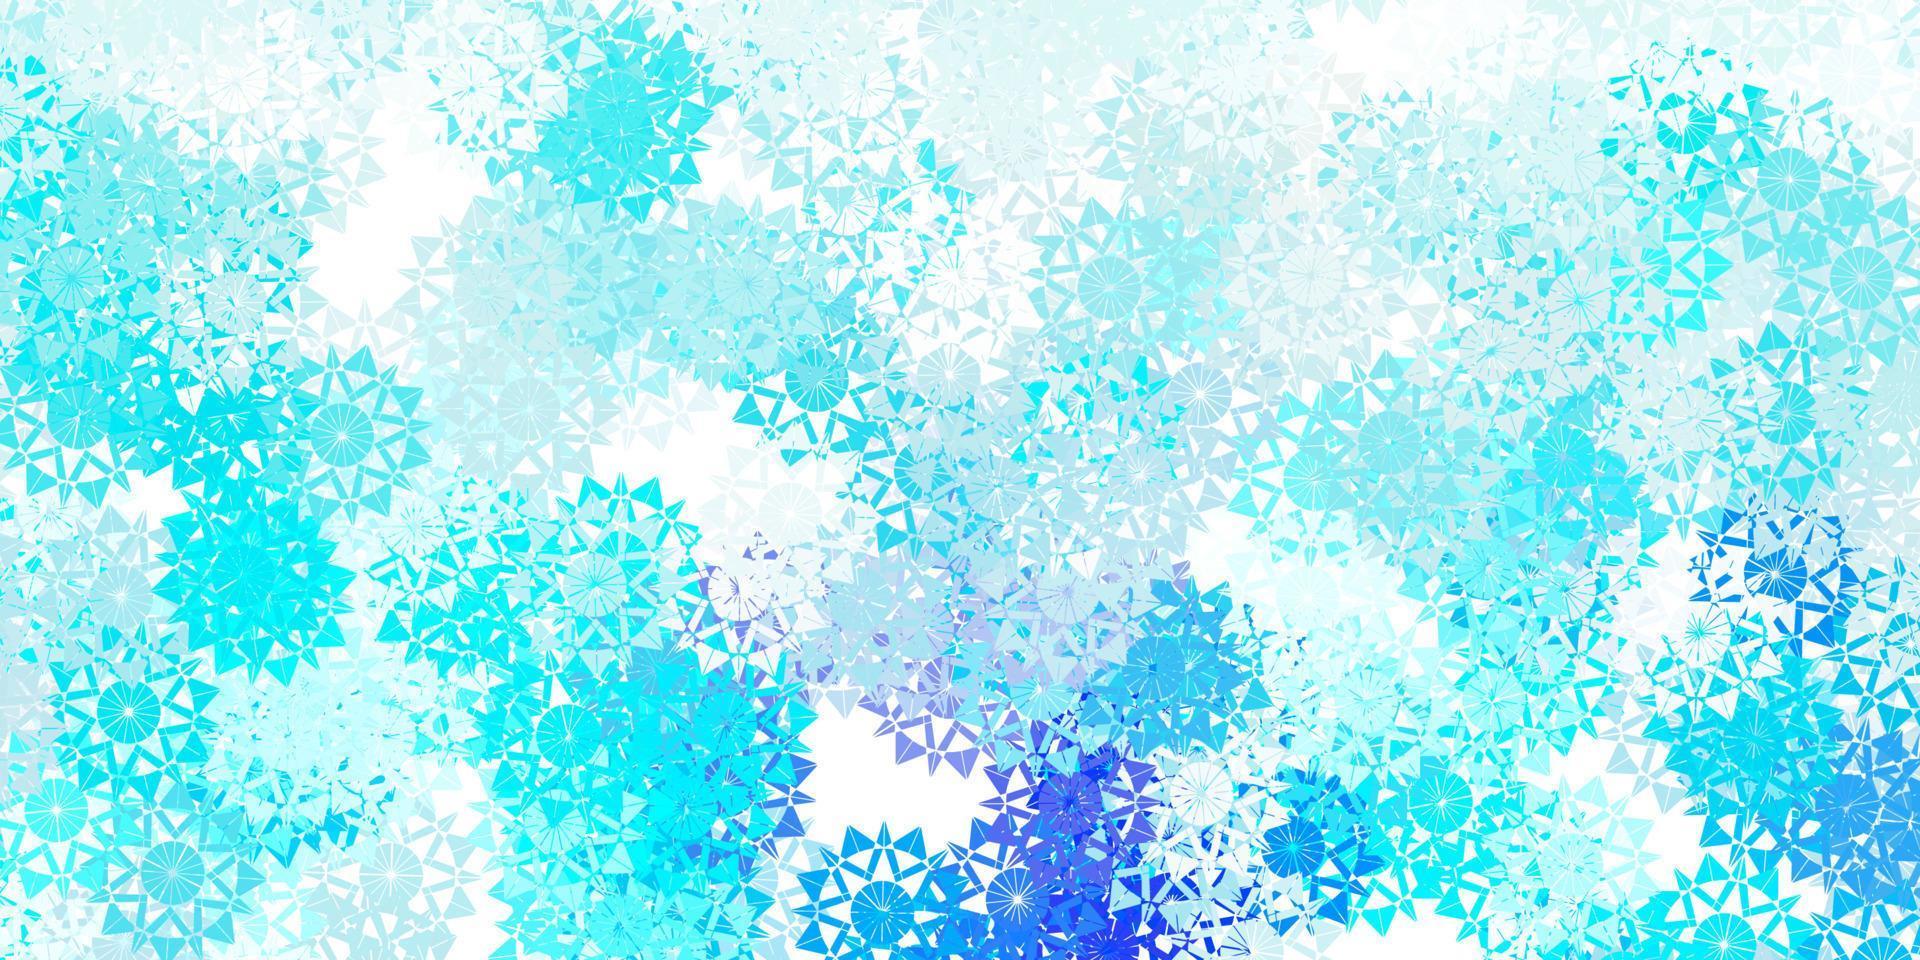 hellblaue Vektorschablone mit Eisschneeflocken. vektor